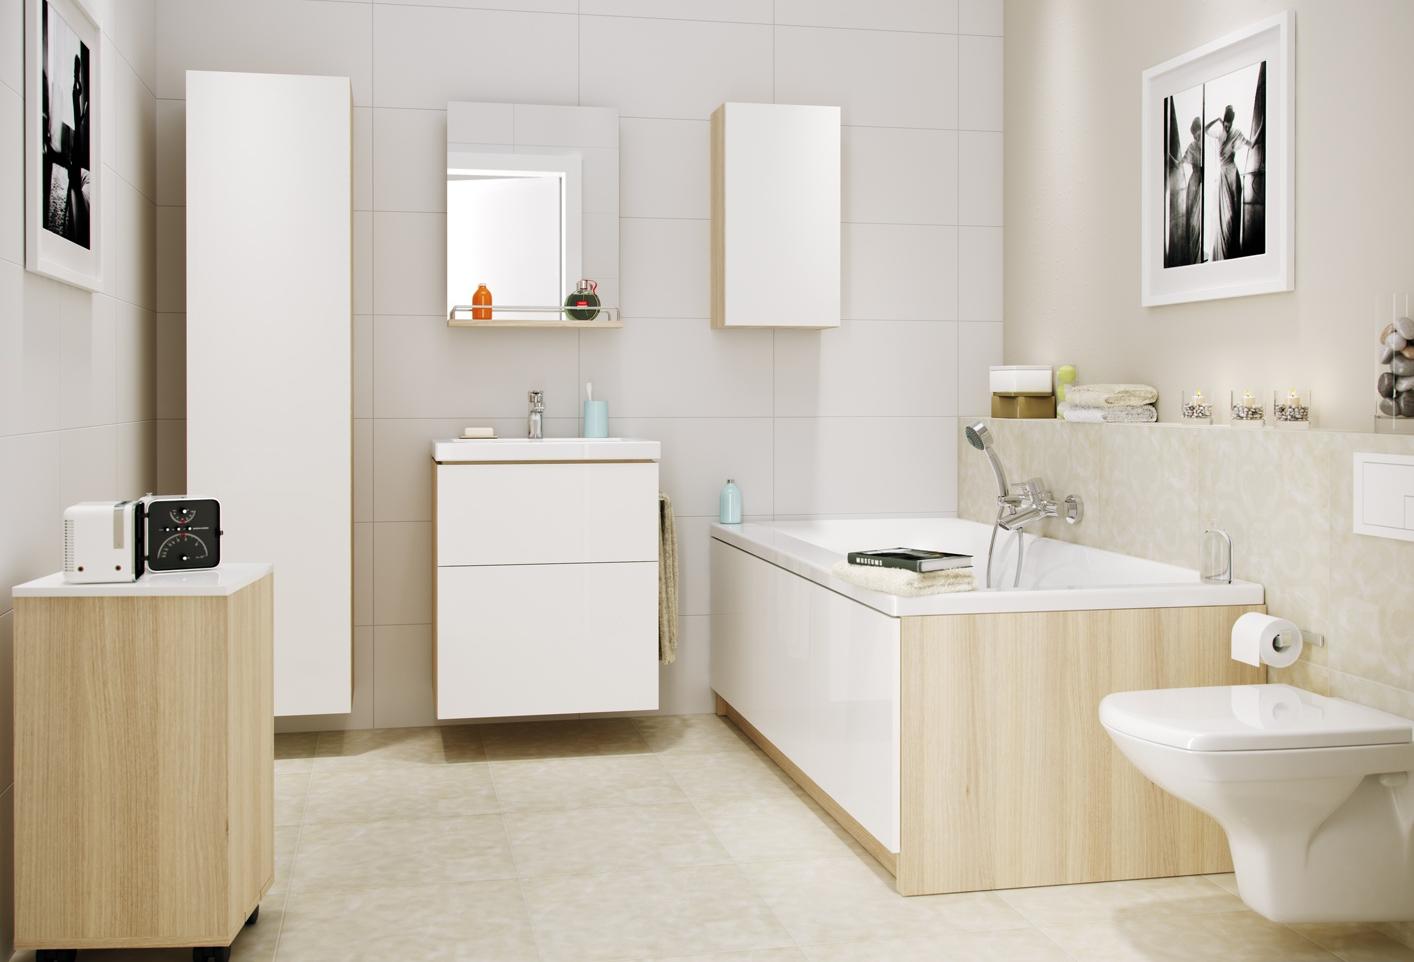 Мебель для ванной Cersanit Smart 55